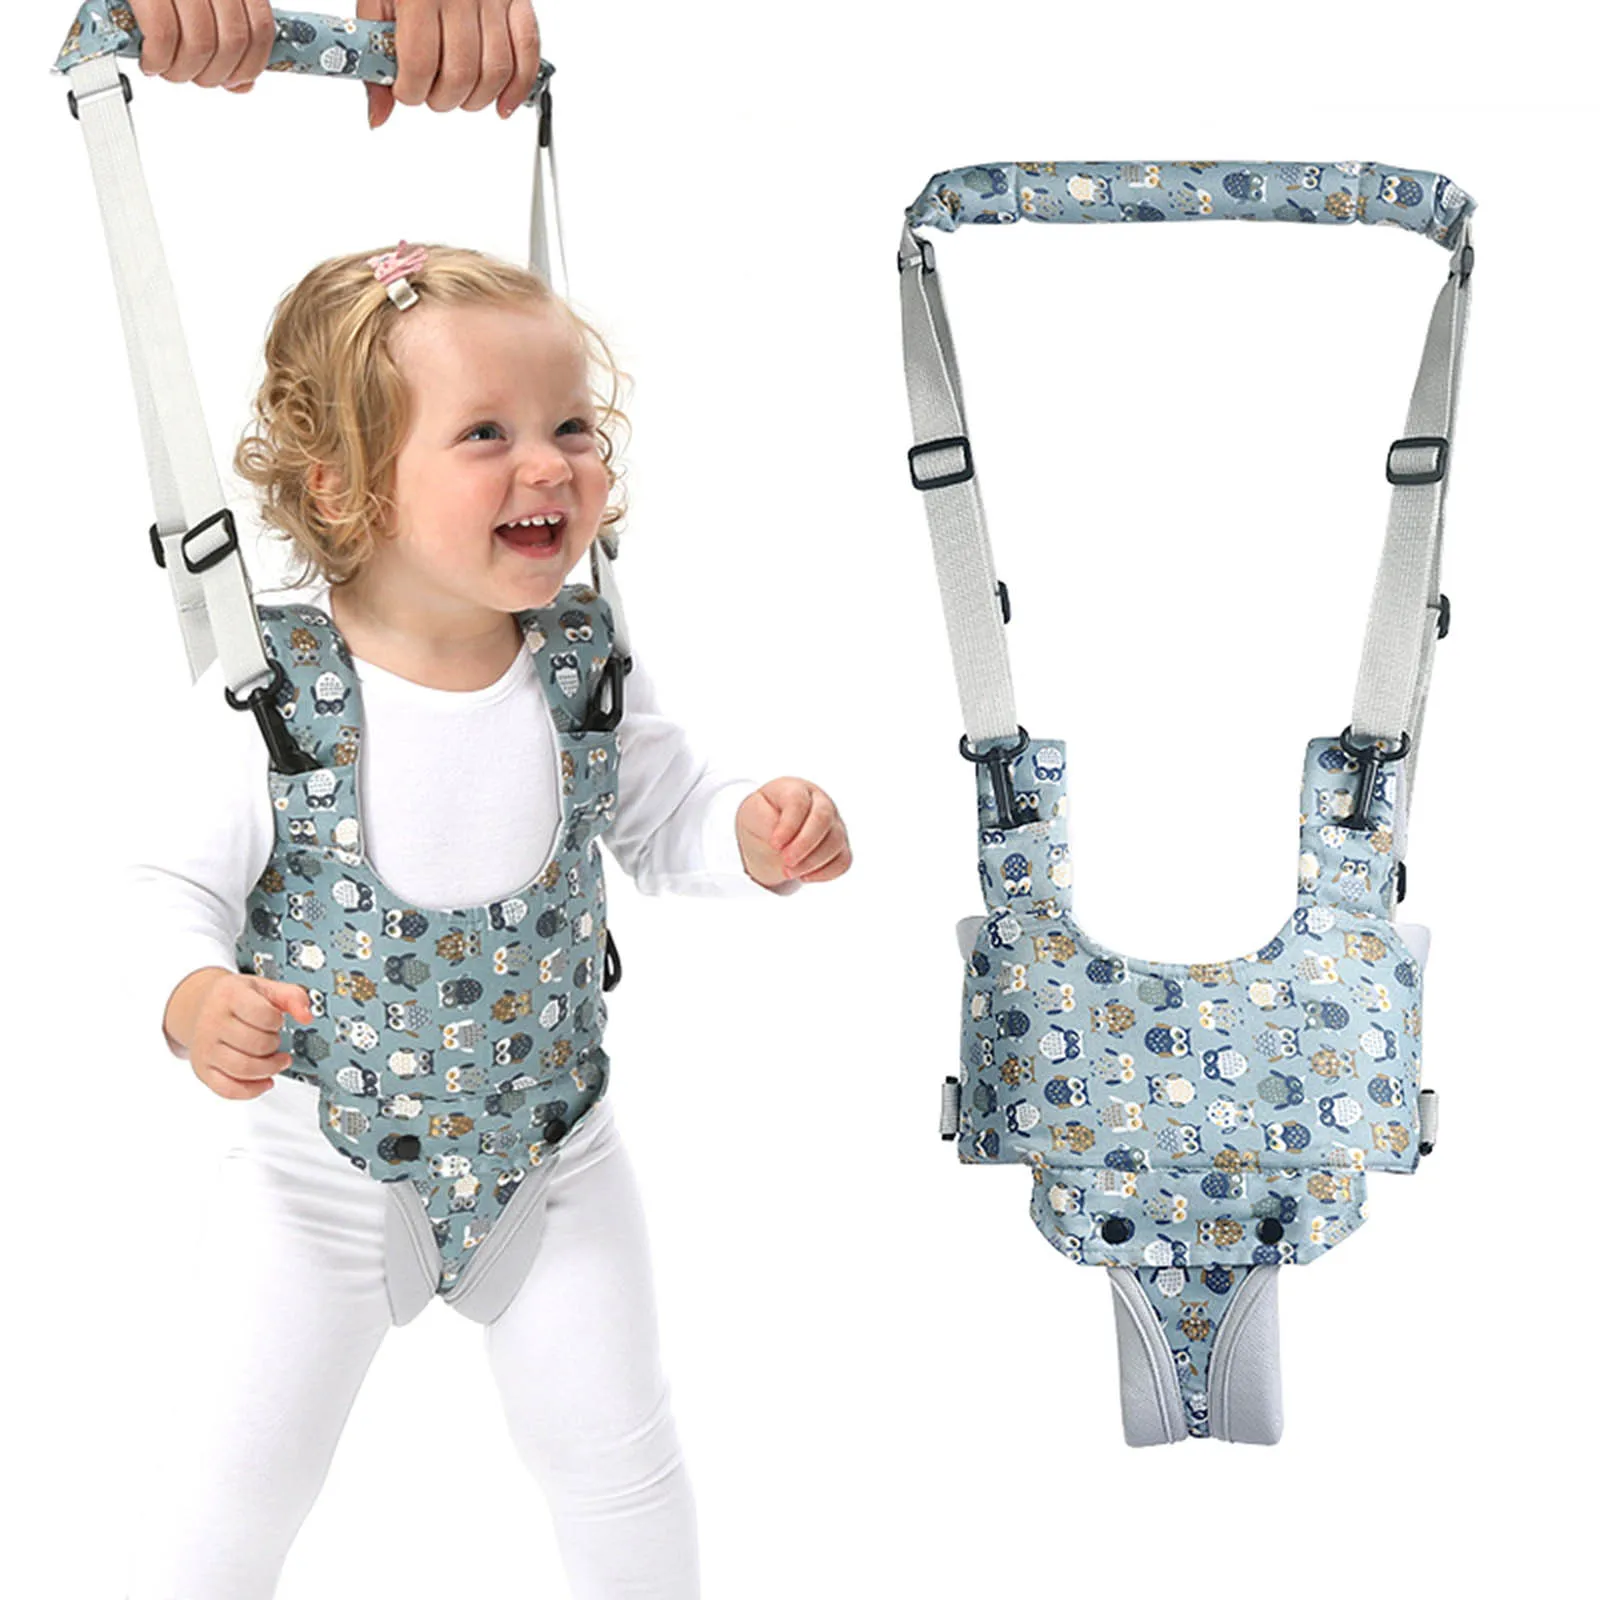 

2021 Brand New Kid Baby Infant Toddler Harness Walk Learning Assistant Walker Jumper Strap Belt Safety Adjustable Reins Harness